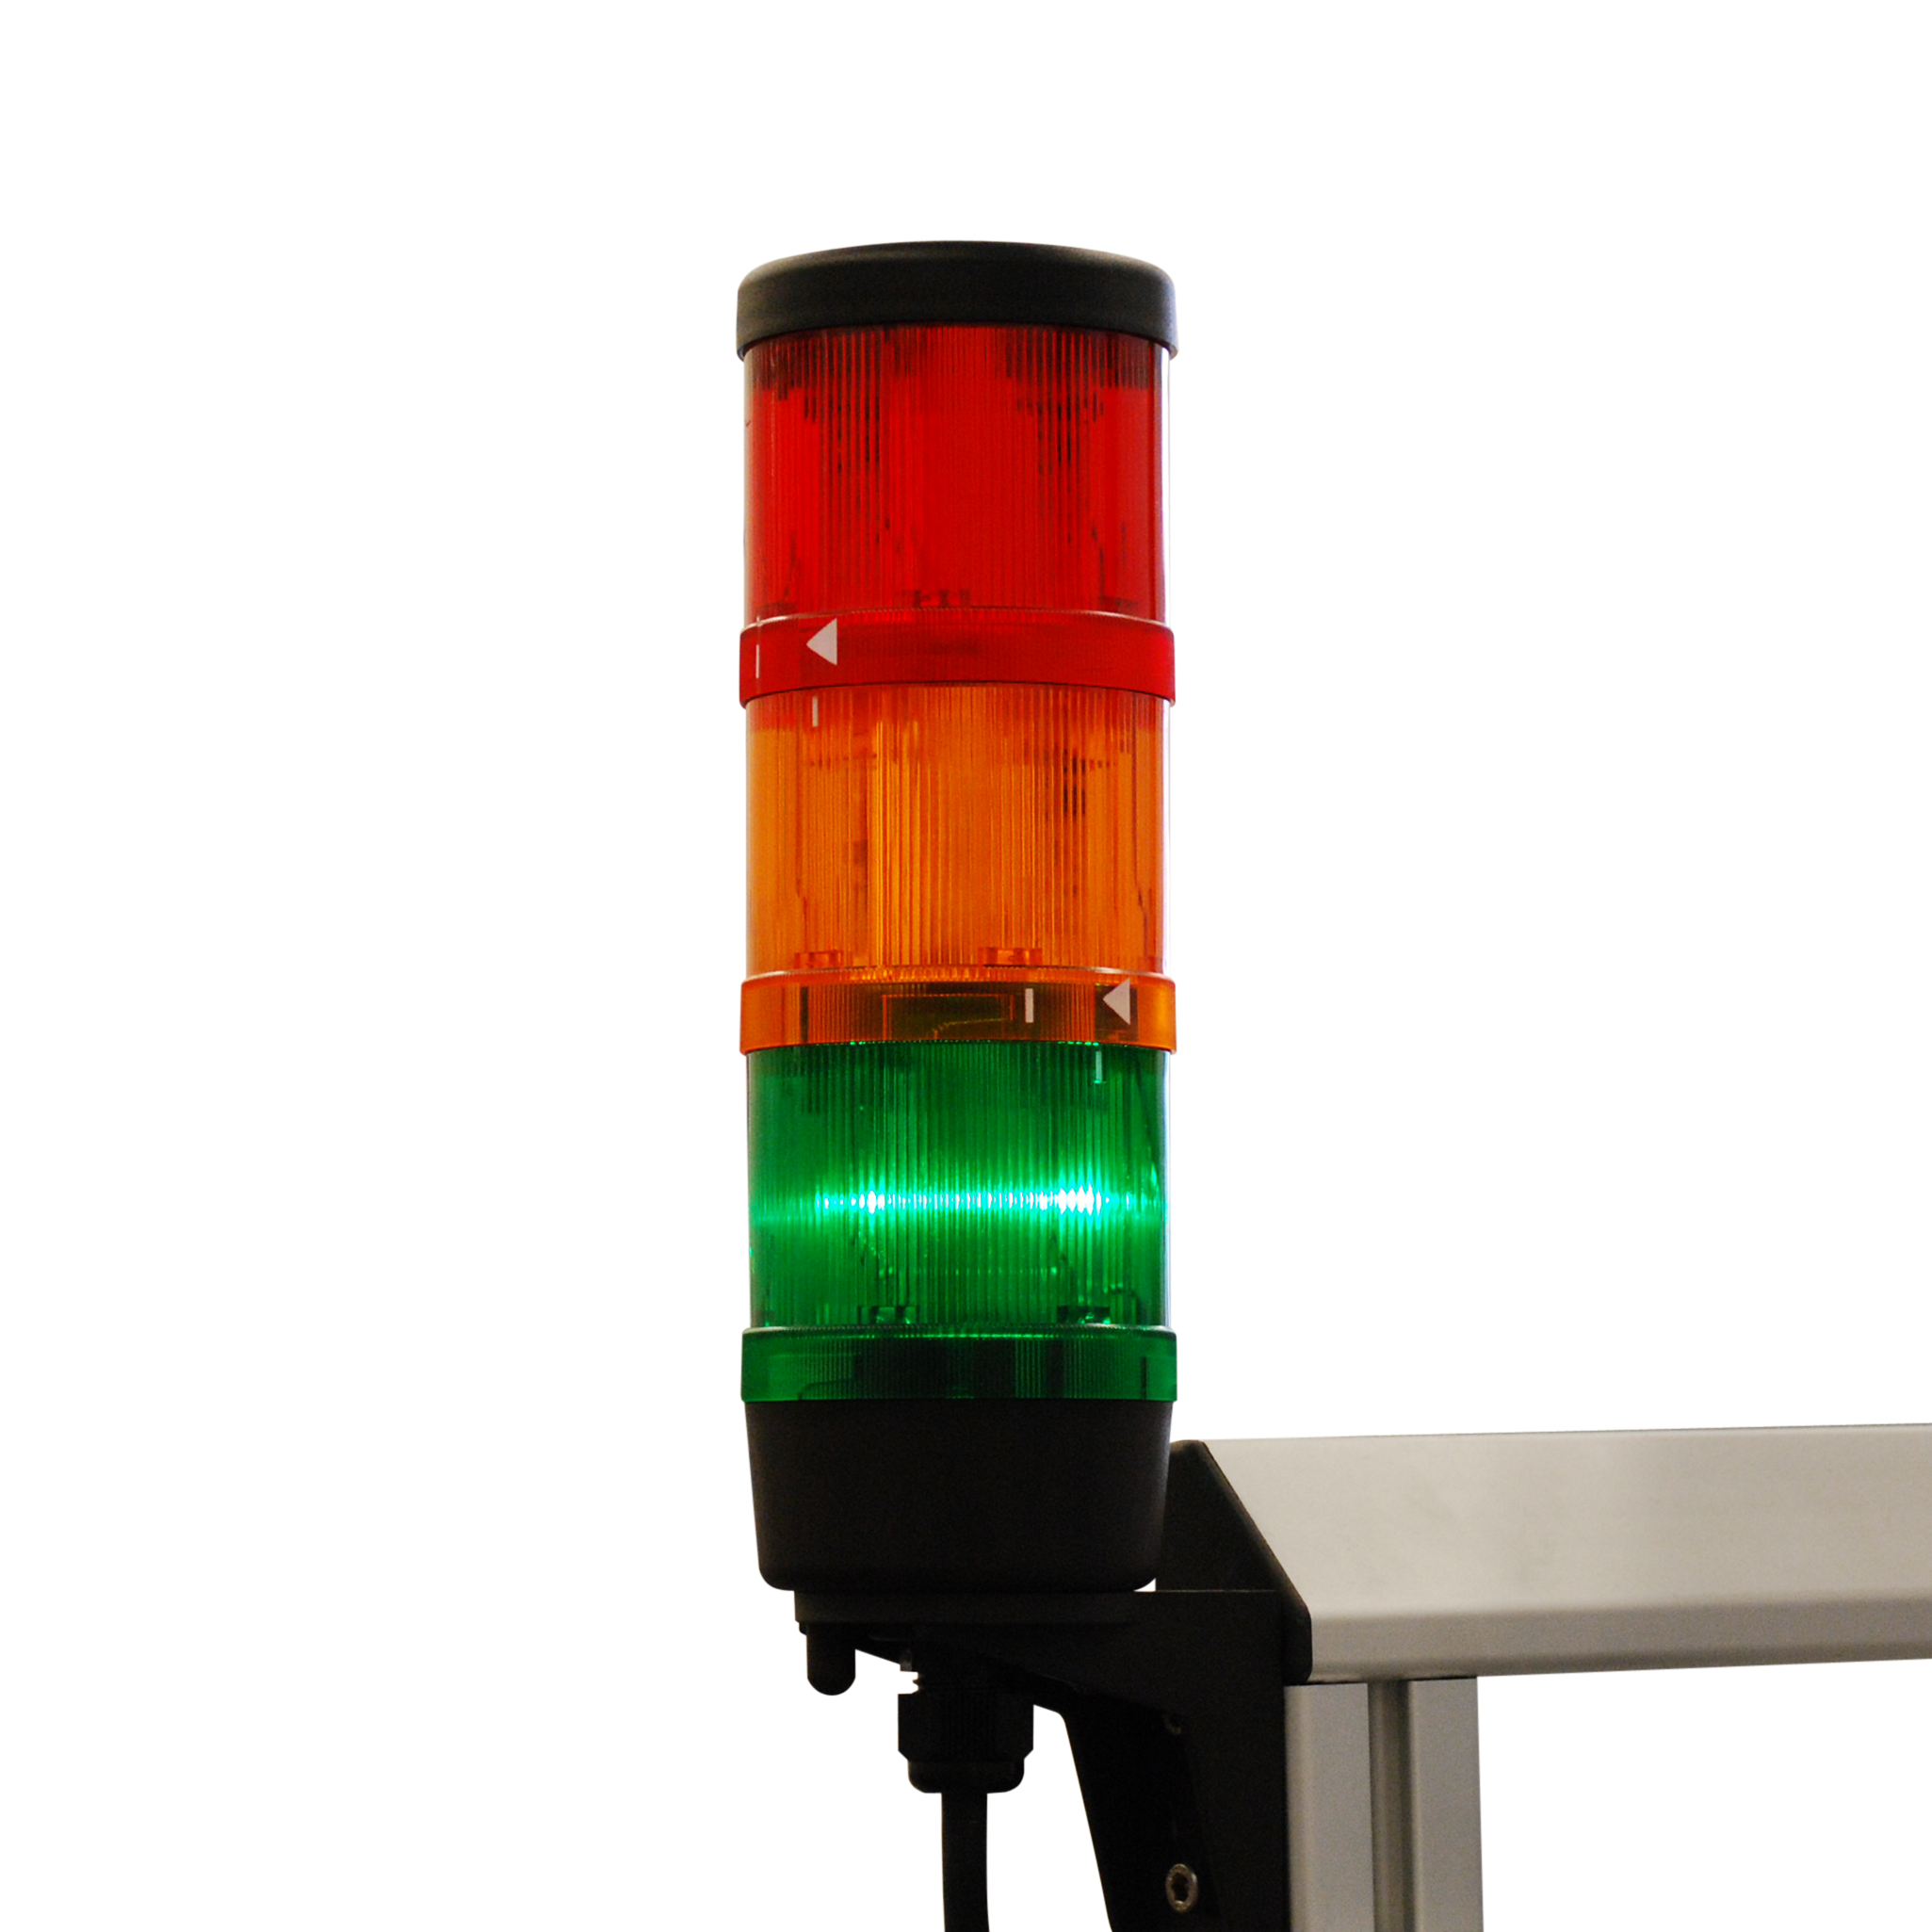 狀態指示燈利用信號燈傳達訊息給使用者